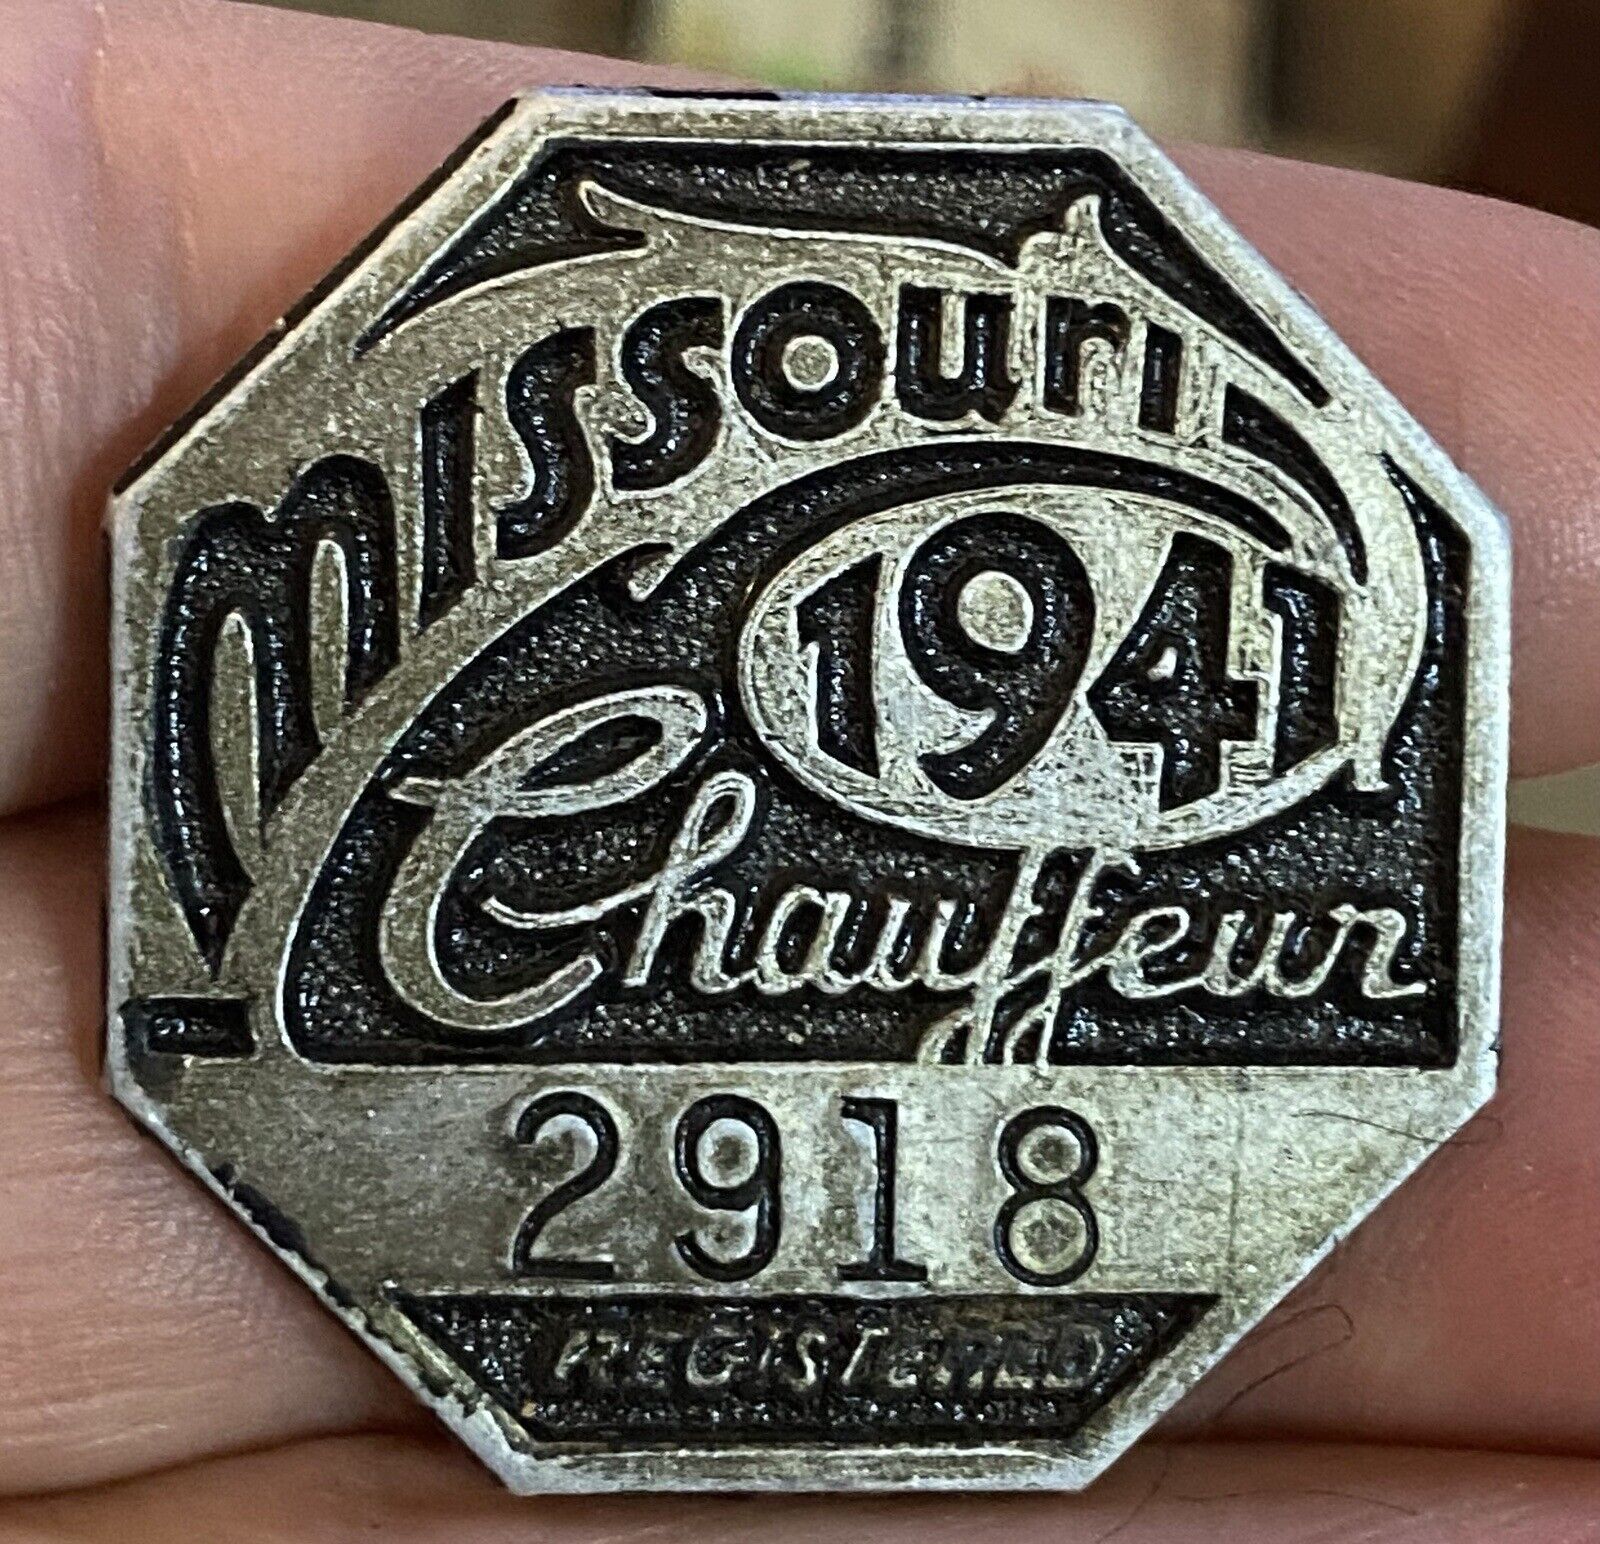 1941 Missouri Chauffeur Badge  